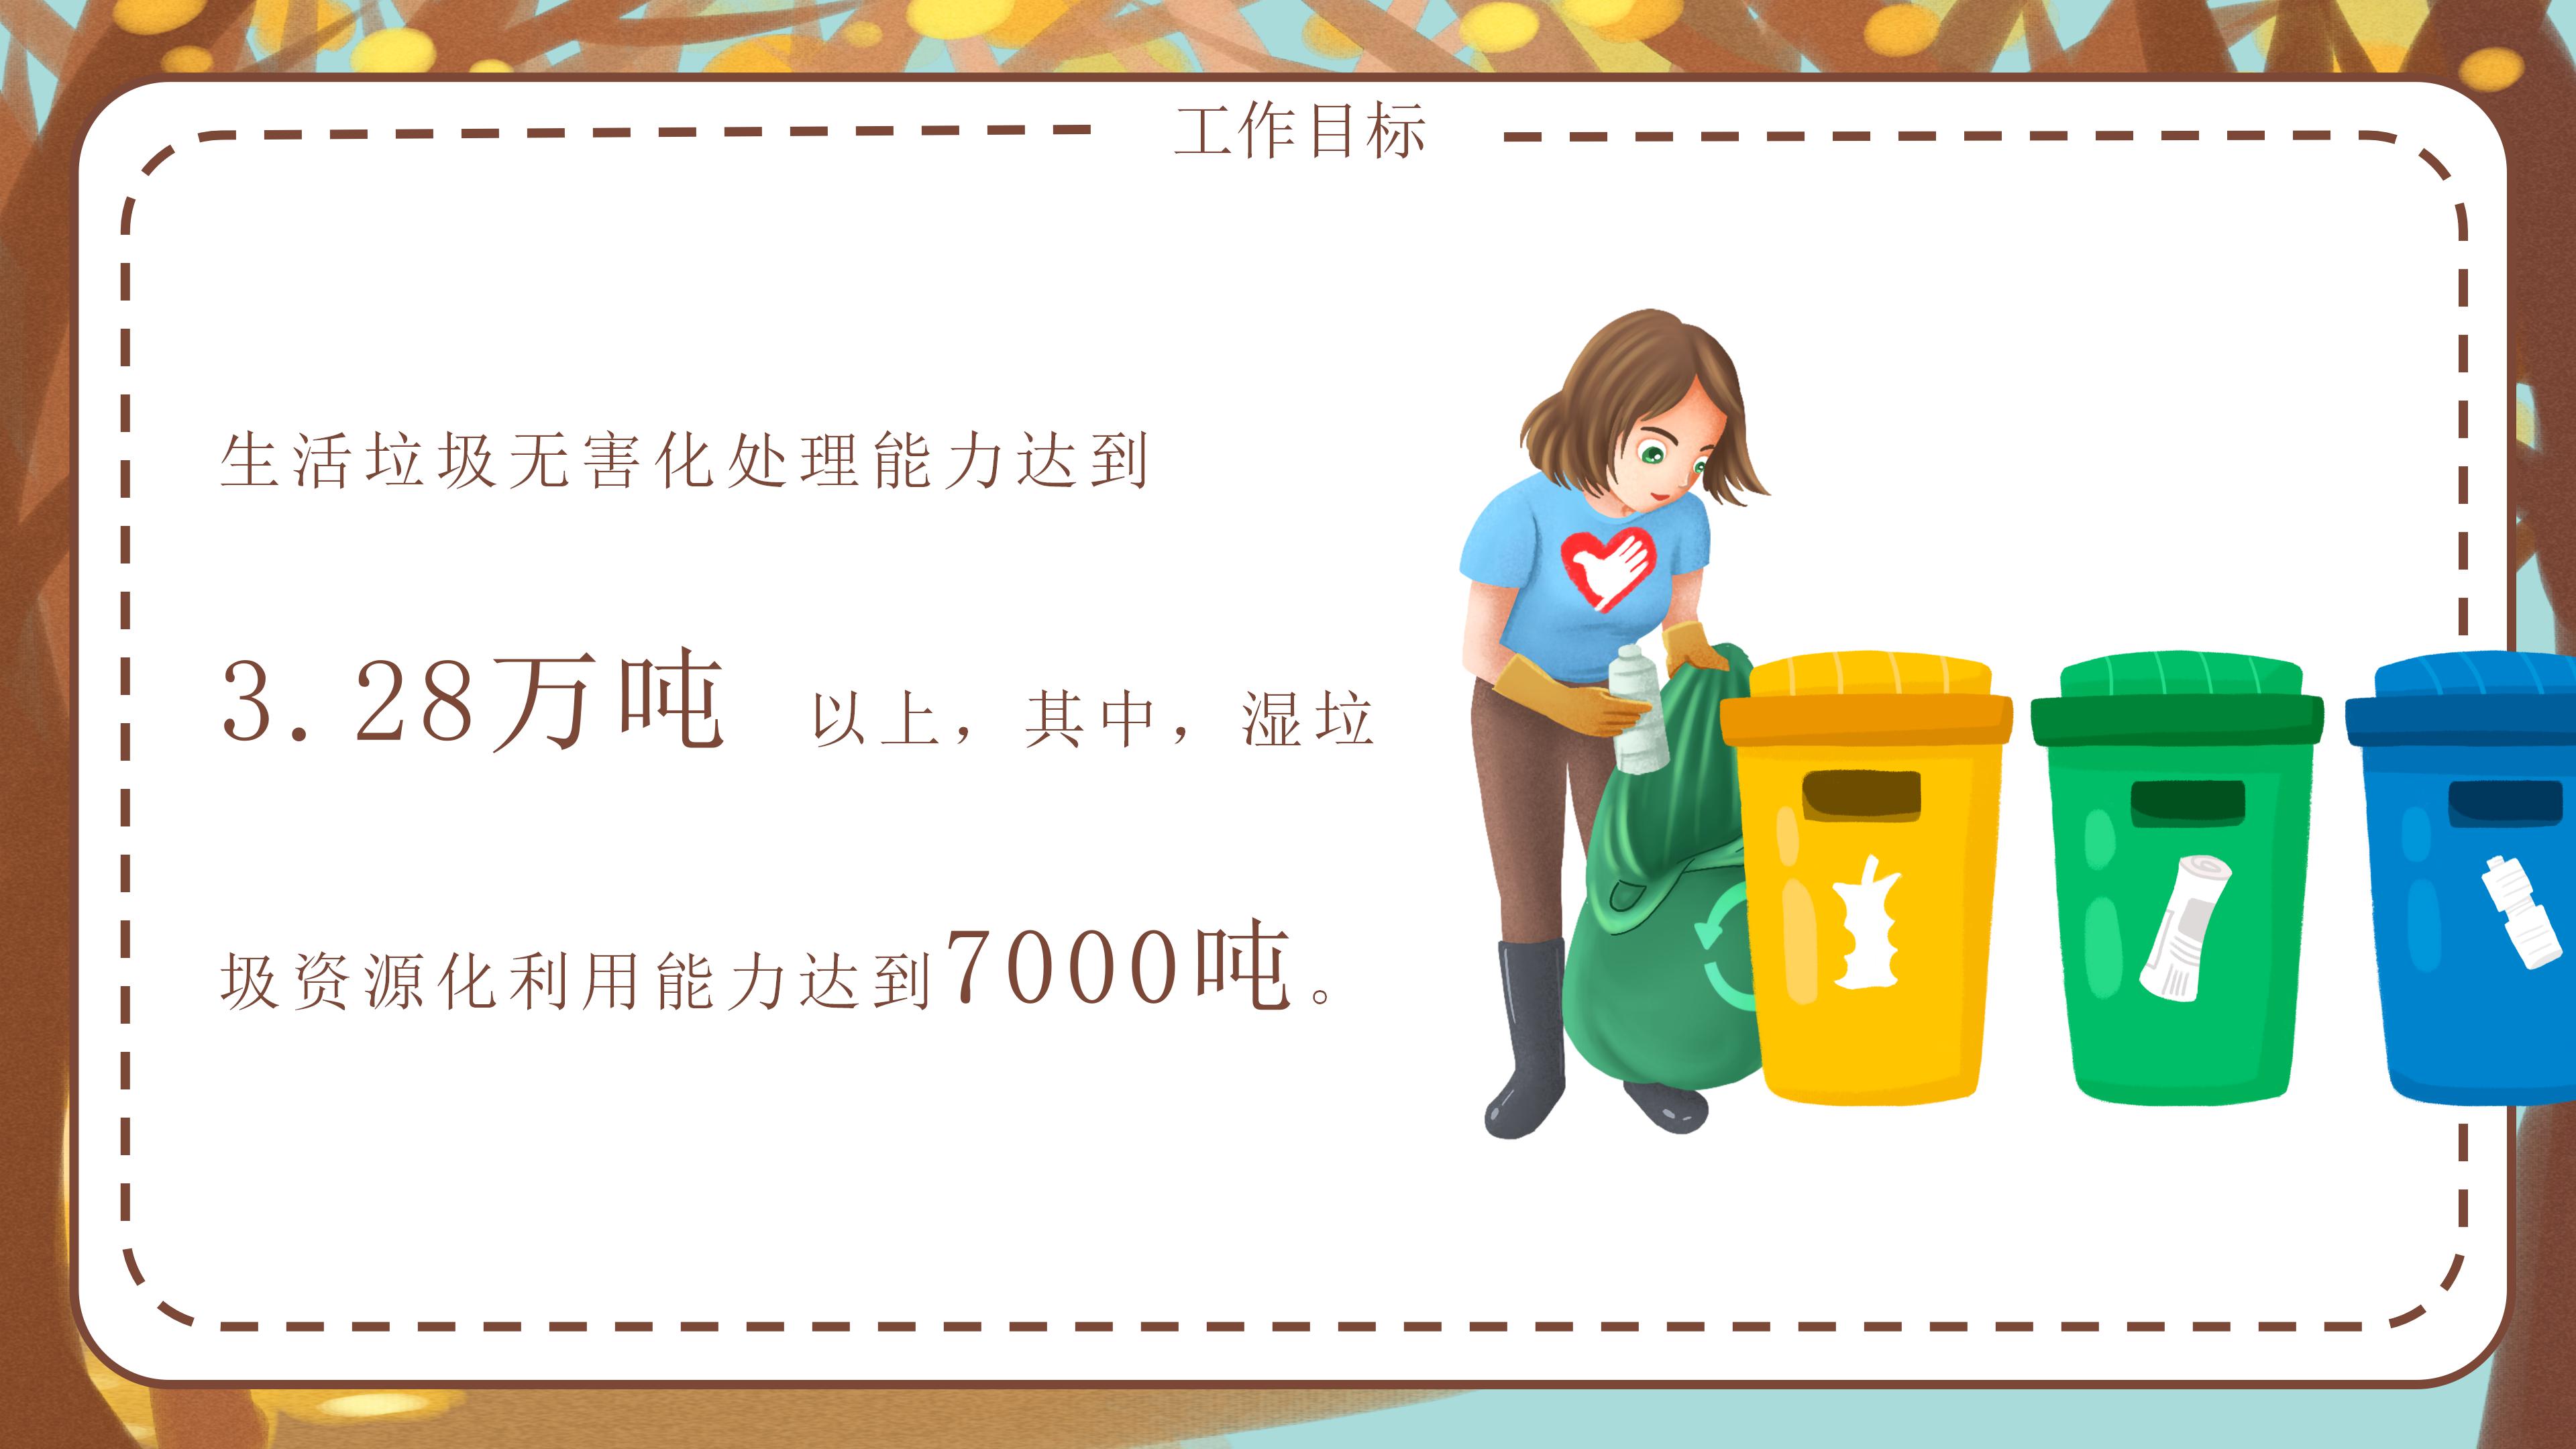 时尚三维卡通动画背景垃圾分类环保宣传PPT模板